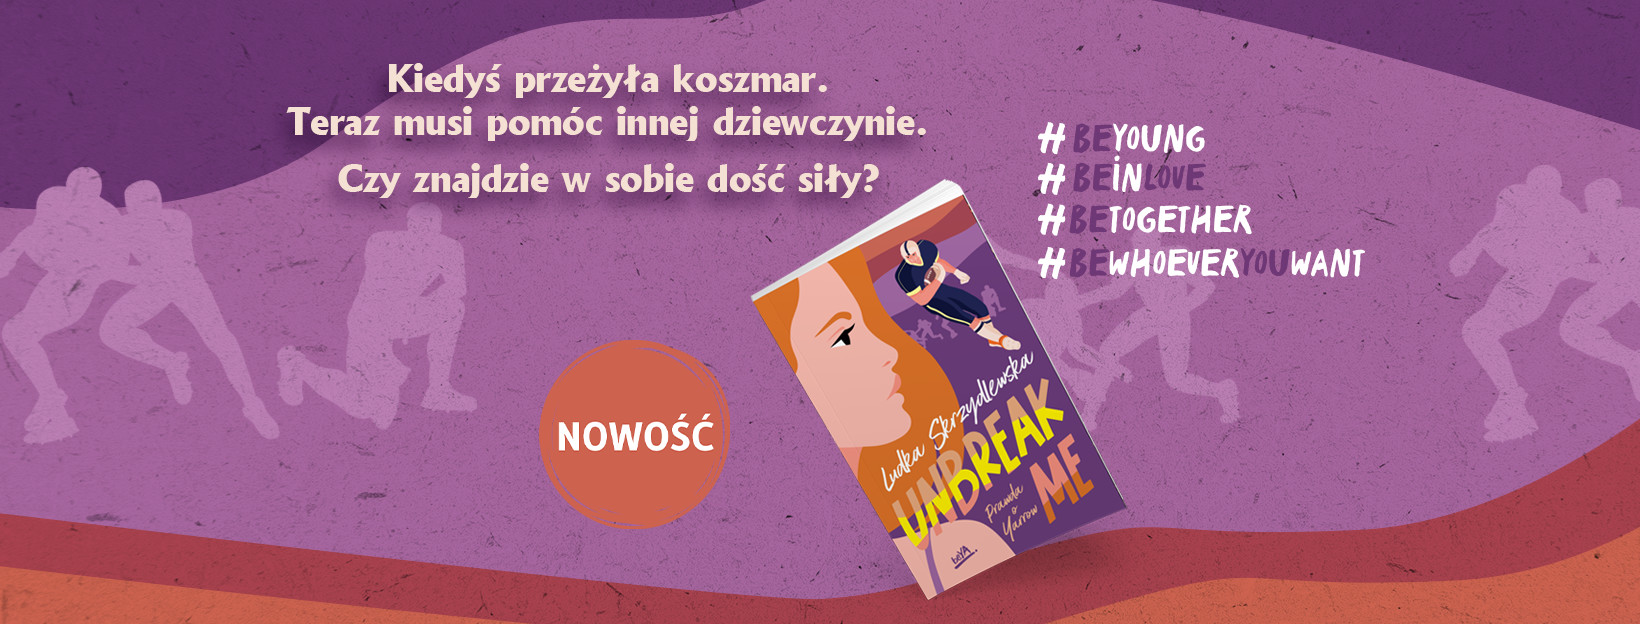 "Unbreak Me. Prawda o Yarrow" - książka z gatunku new adult od Ludki Skrzydlewskiej!